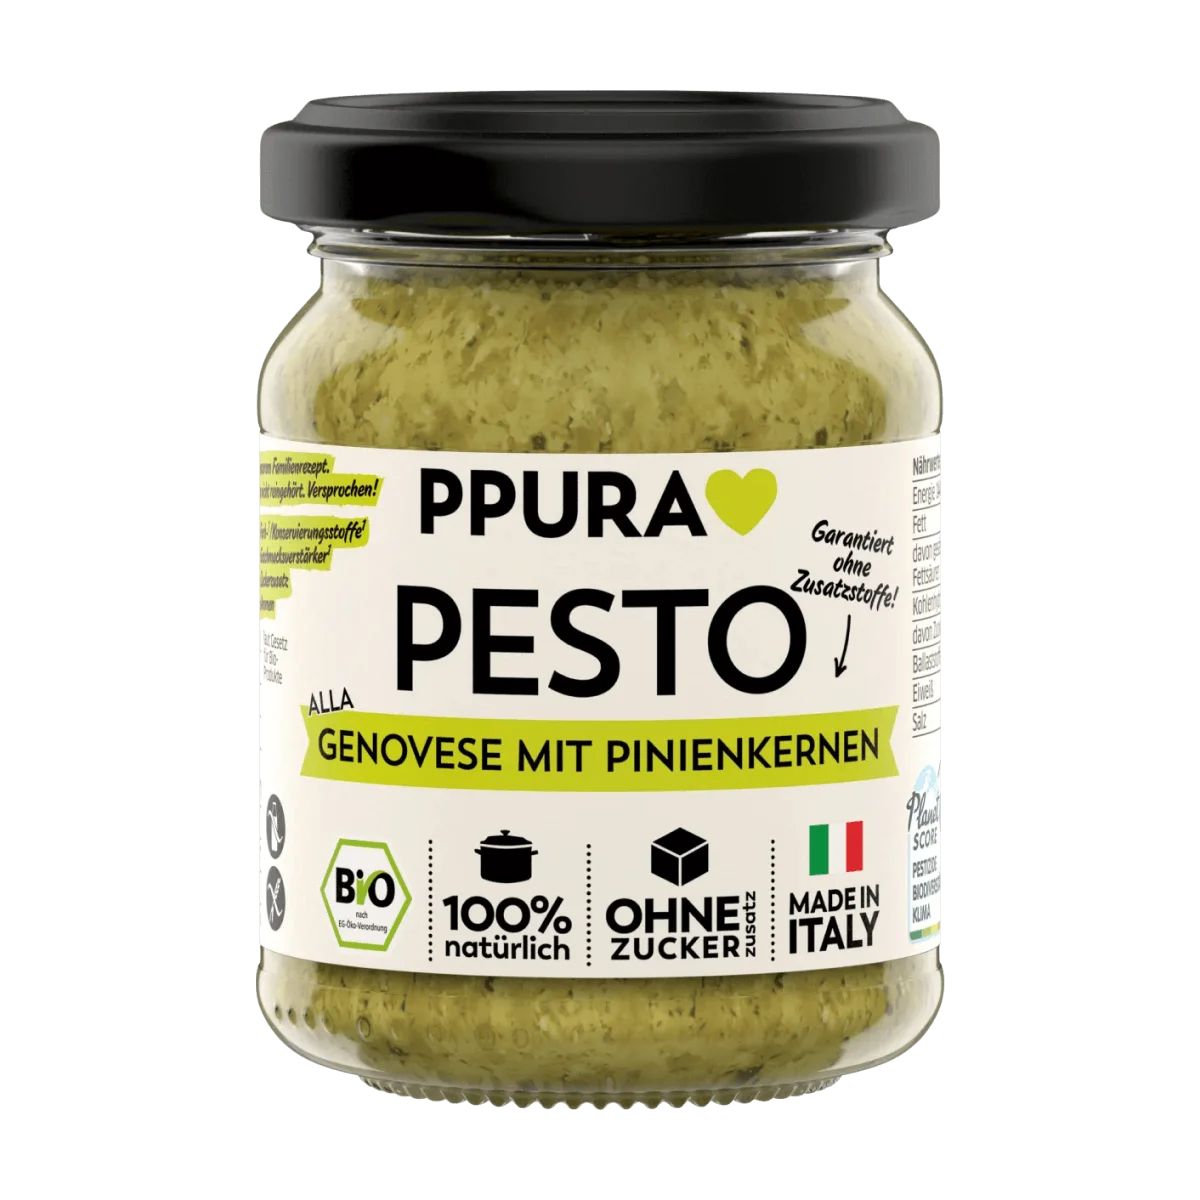 PPURA Pesto, Genovese mit Pinienkernen, 120 g